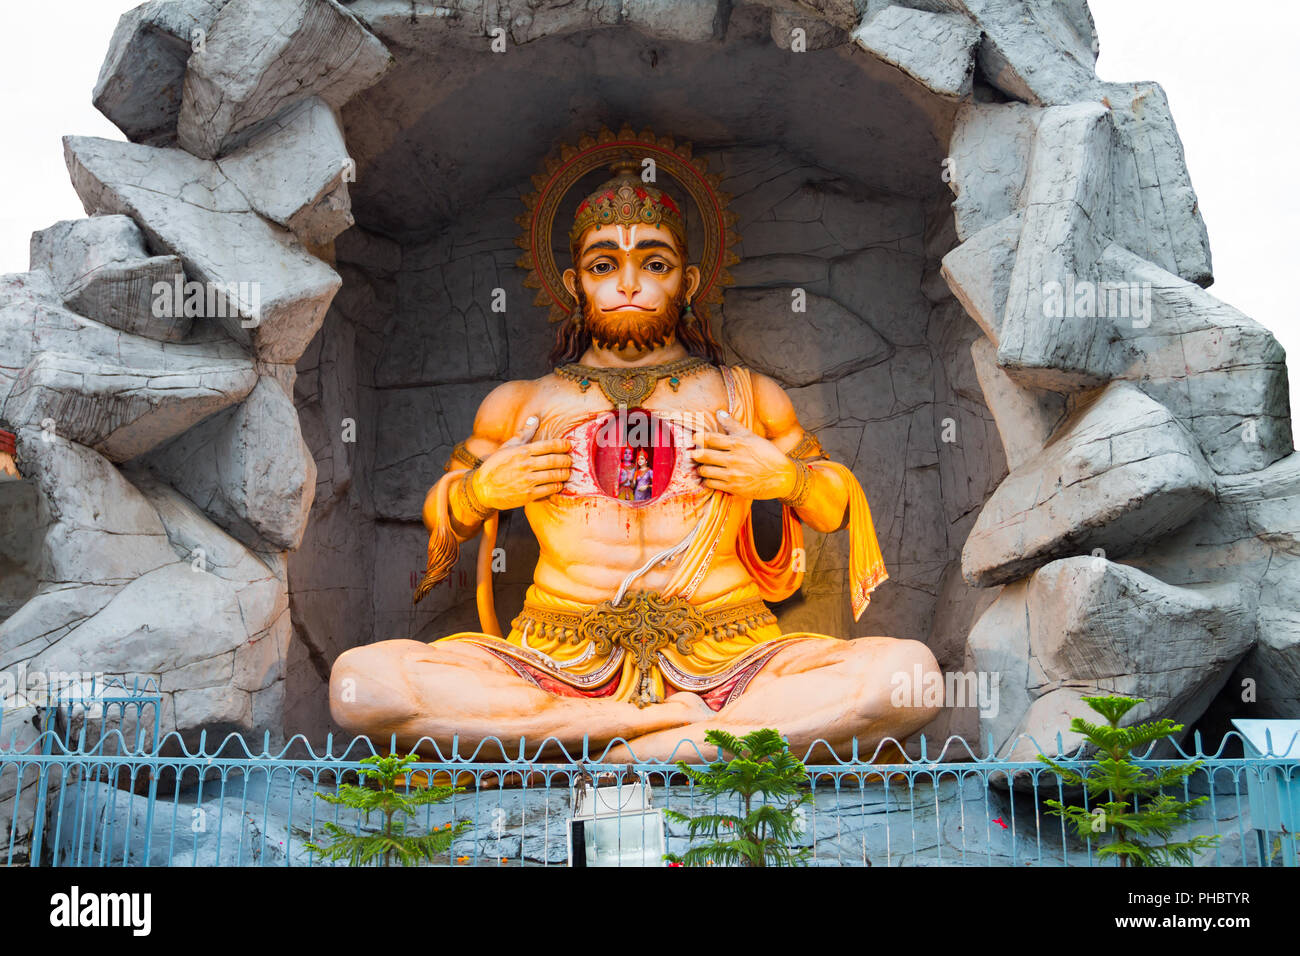 Sculpture of Hindu God Hanuman Stock Photo - Alamy